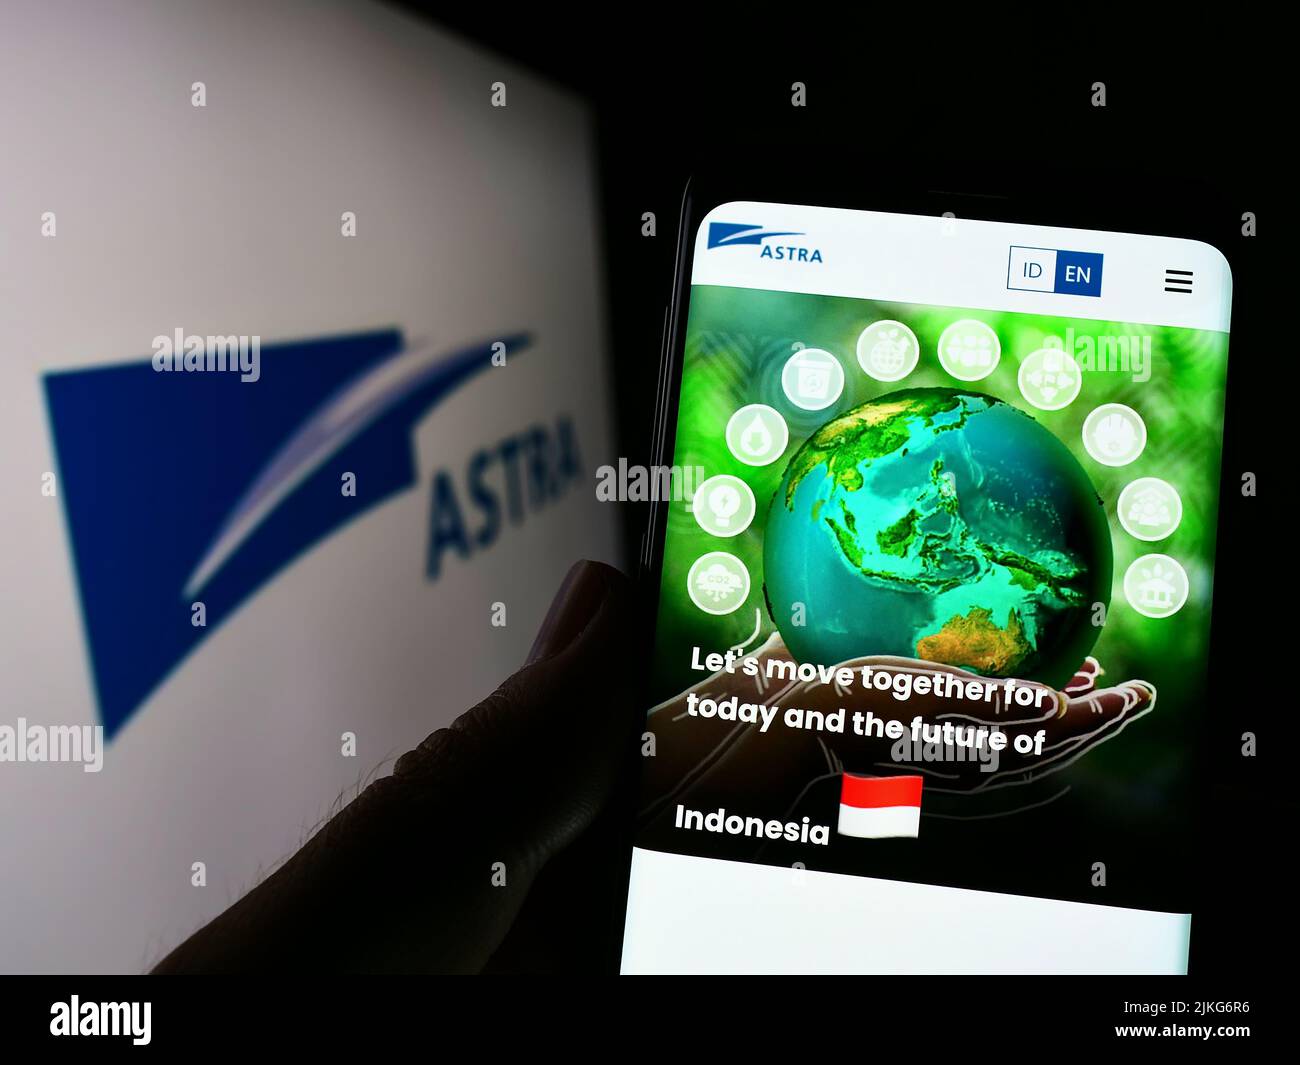 Persona que sostiene el celular con el Web site de la compañía indonesia PT Astra International Tbk en la pantalla con el logo. Enfoque en el centro de la pantalla del teléfono. Foto de stock